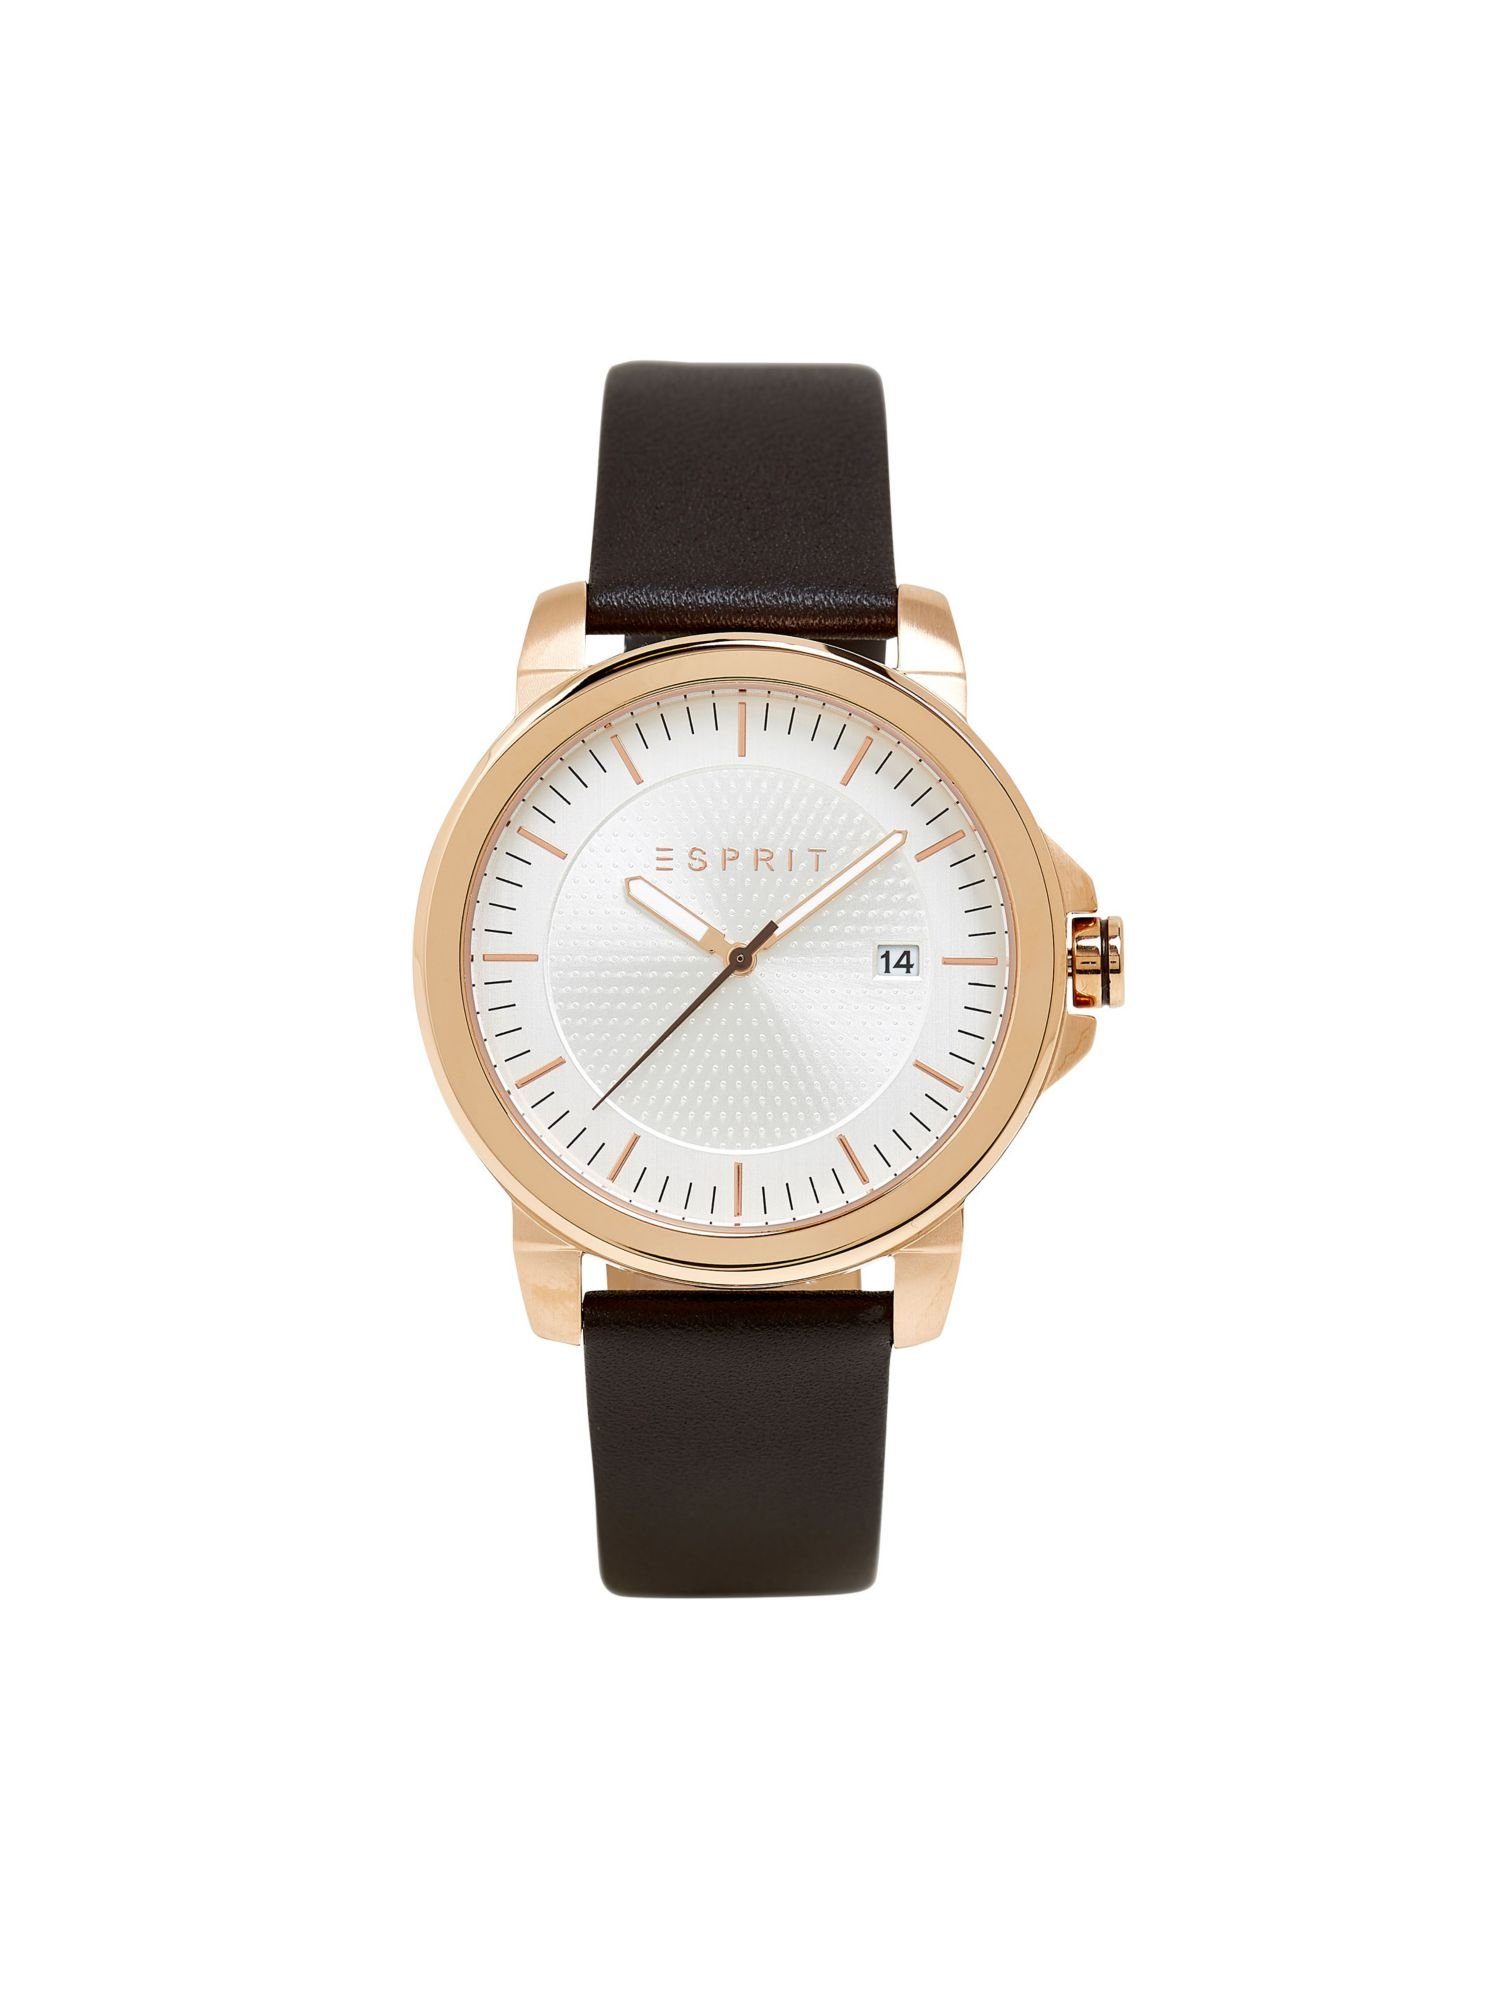 Esprit Quarzuhr mit Edelstahl-Uhr Leder-Armband